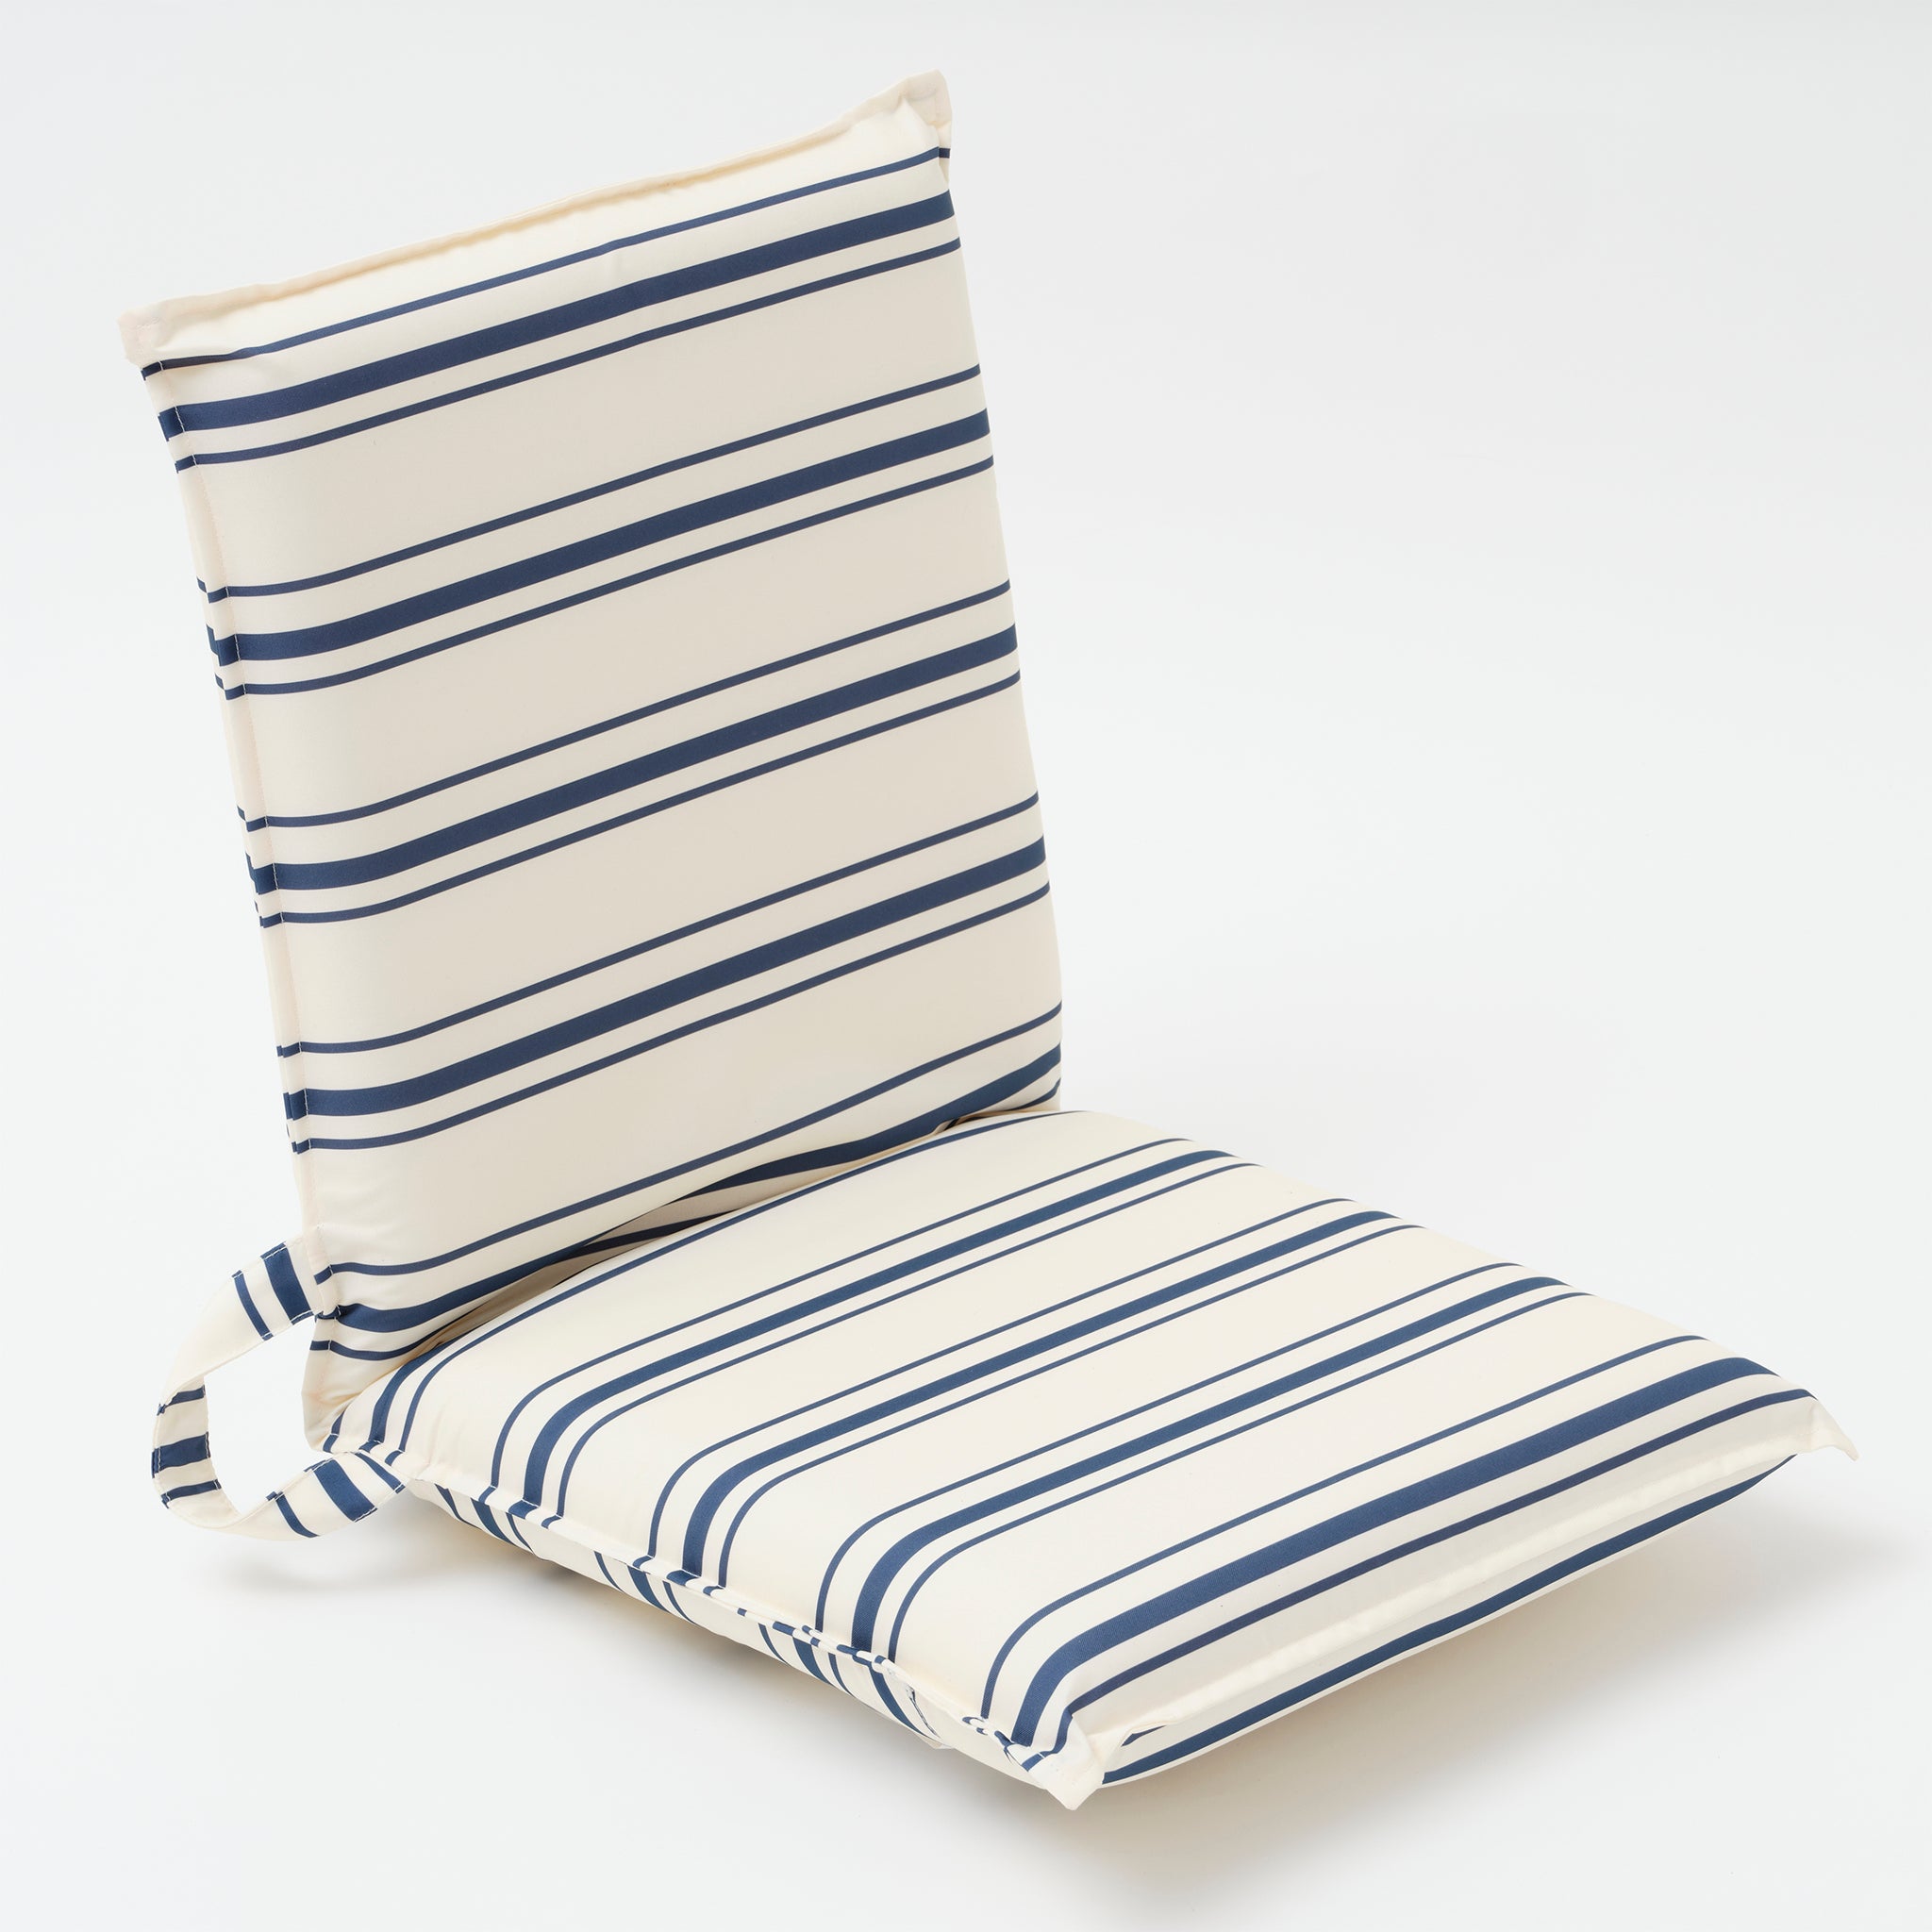 Lean Back Beach Chair | The Resort Coastal Blue